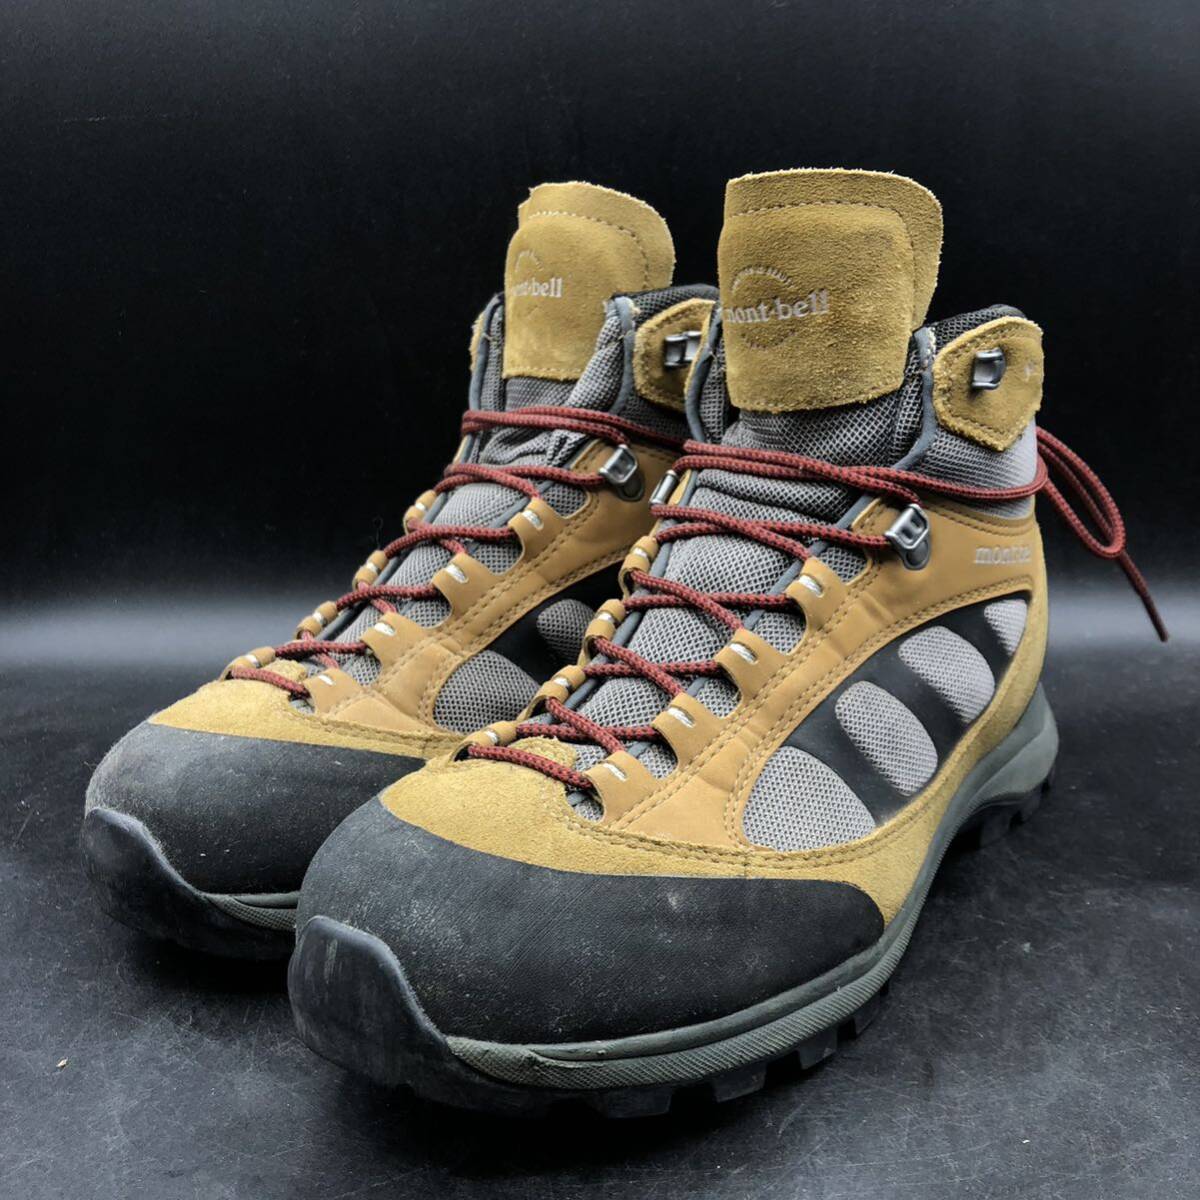 M2790 mont-bell モンベル トレッキングシューズ ブーツ GORE-TEX ゴアテックス メンズ US9/27.0cm ブラウン系 登山靴の画像1